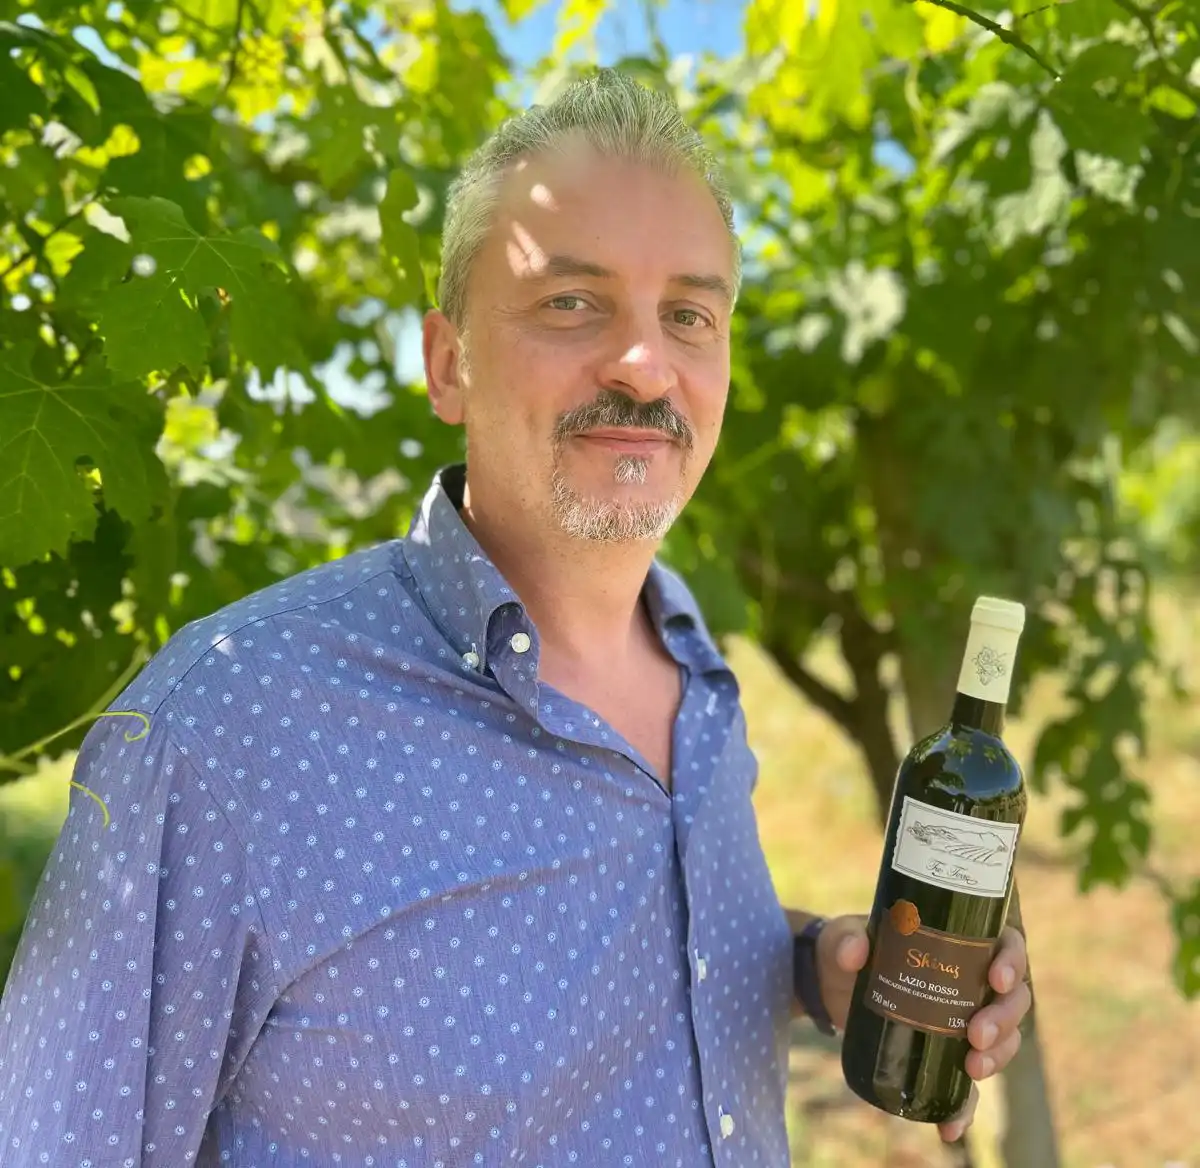 Marco Maccotta della Cantina Tre Terre di Sabaudia mostra il vino vincitore